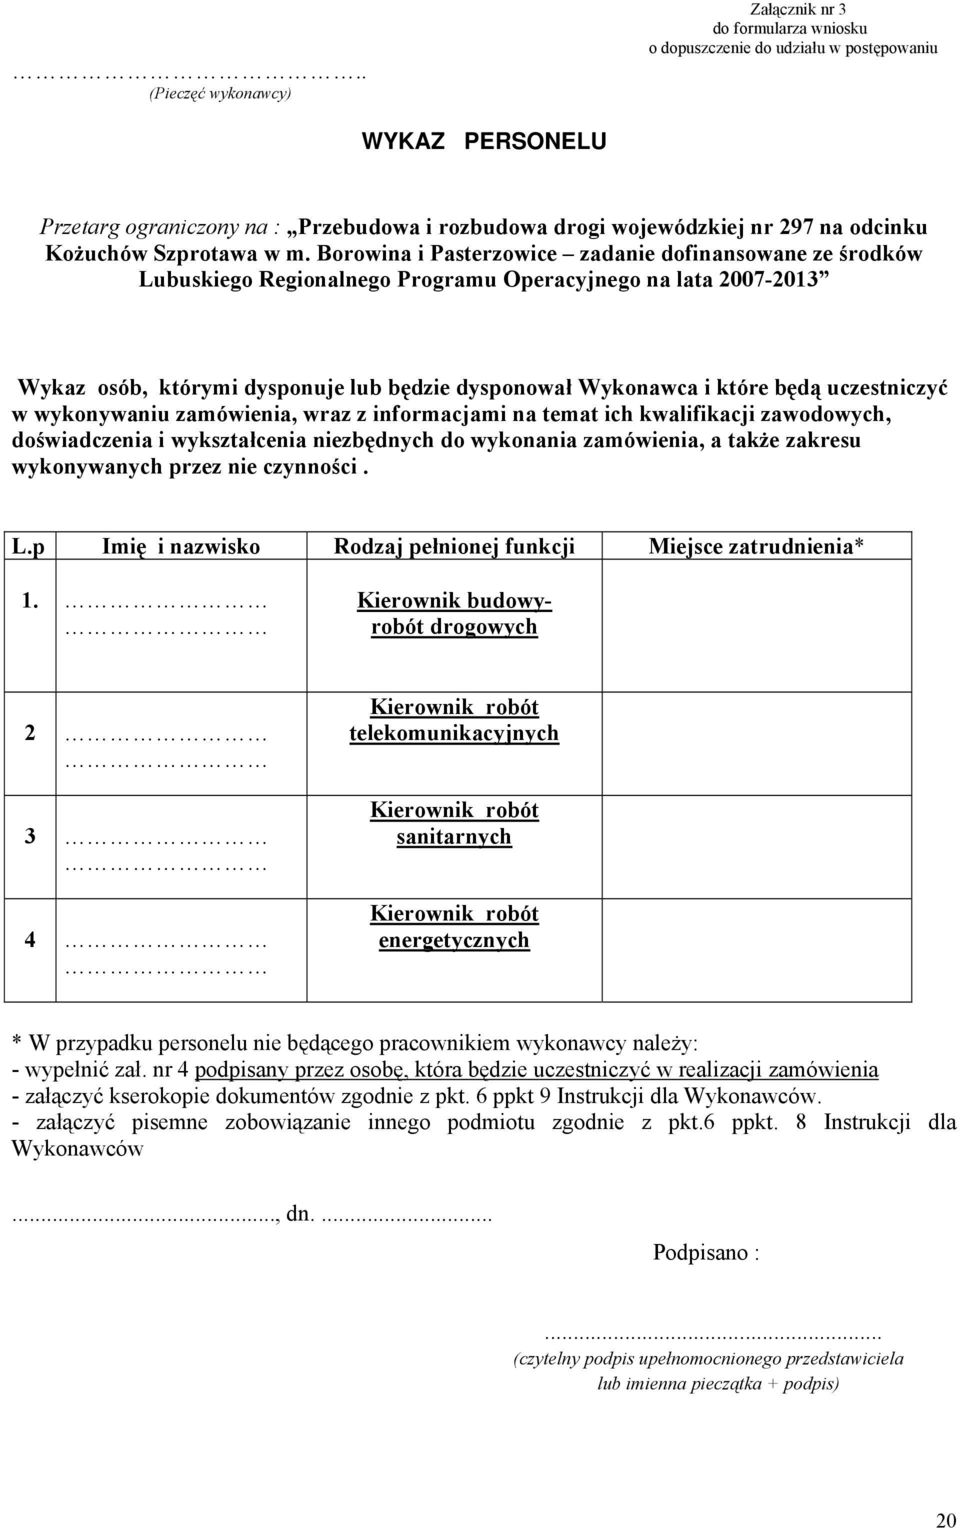 Borowina i Pasterzowice zadanie dofinansowane ze środków Lubuskiego Regionalnego Programu Operacyjnego na lata 2007-2013 Wykaz osób, którymi dysponuje lub będzie dysponował Wykonawca i które będą